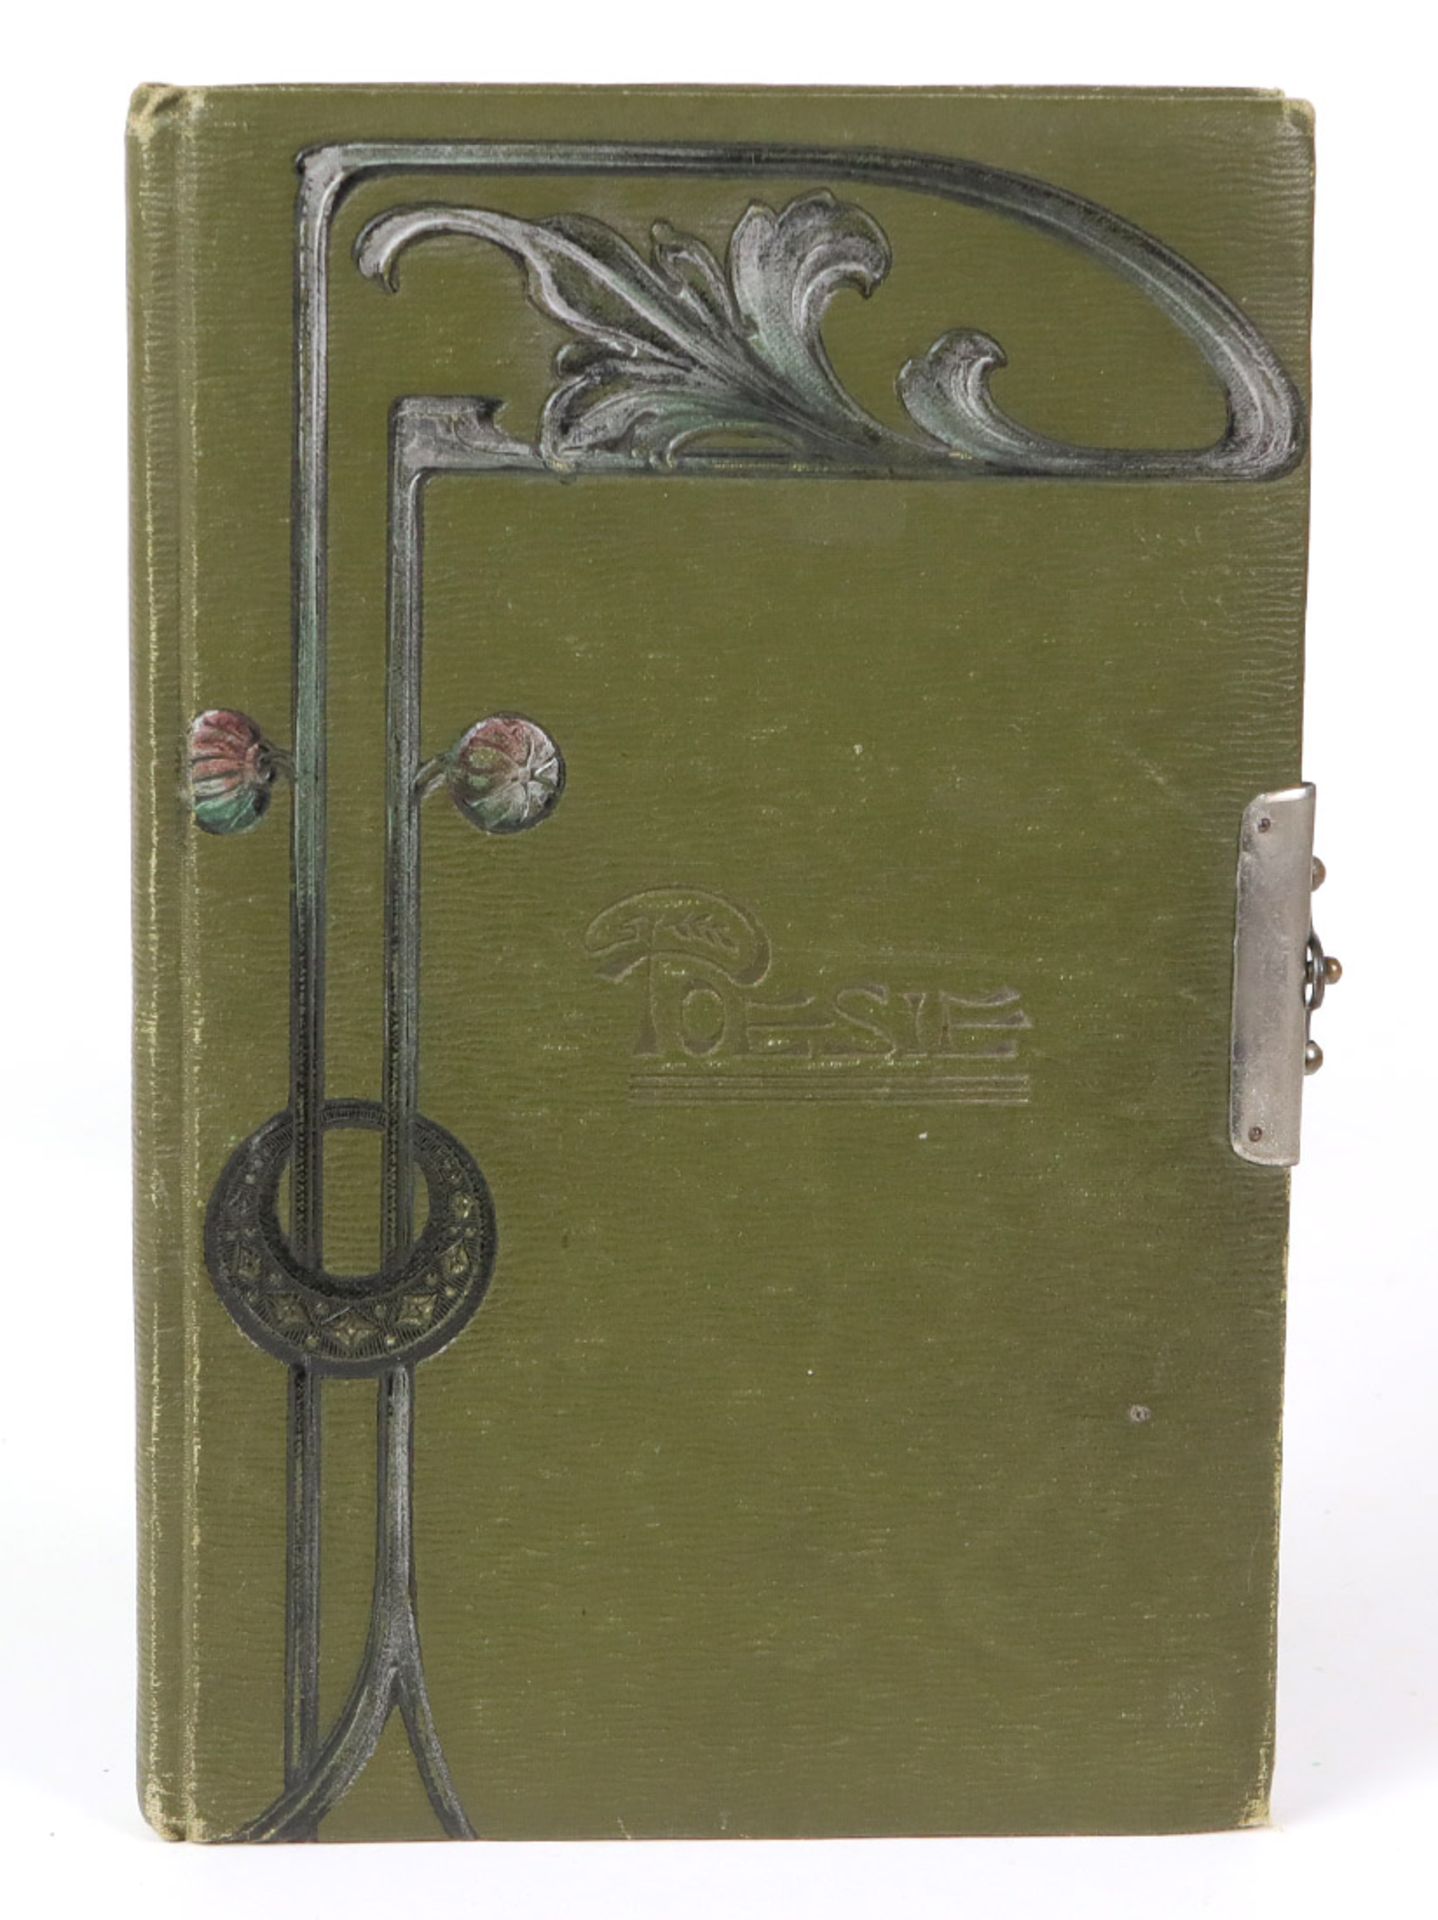 Jugendstil Poesiealbum 1908/09gewachstes grünes Leinenalbum, schauseitig geprägte Jugendstil